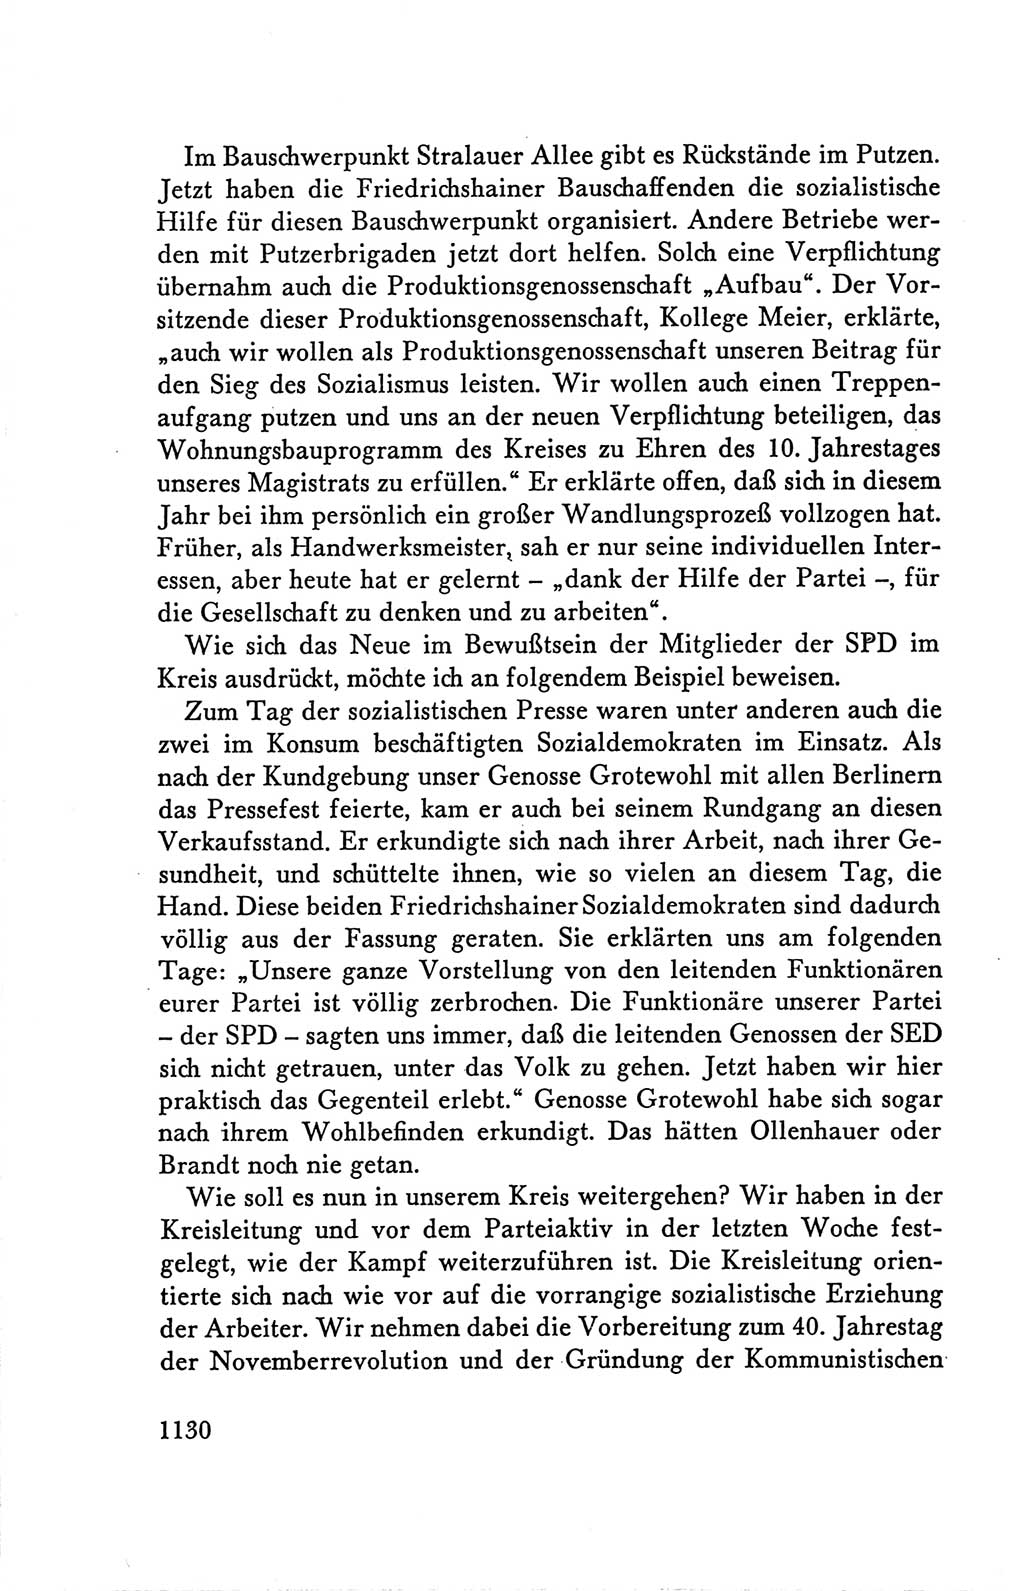 Protokoll der Verhandlungen des Ⅴ. Parteitages der Sozialistischen Einheitspartei Deutschlands (SED) [Deutsche Demokratische Republik (DDR)] 1958, Seite 1130